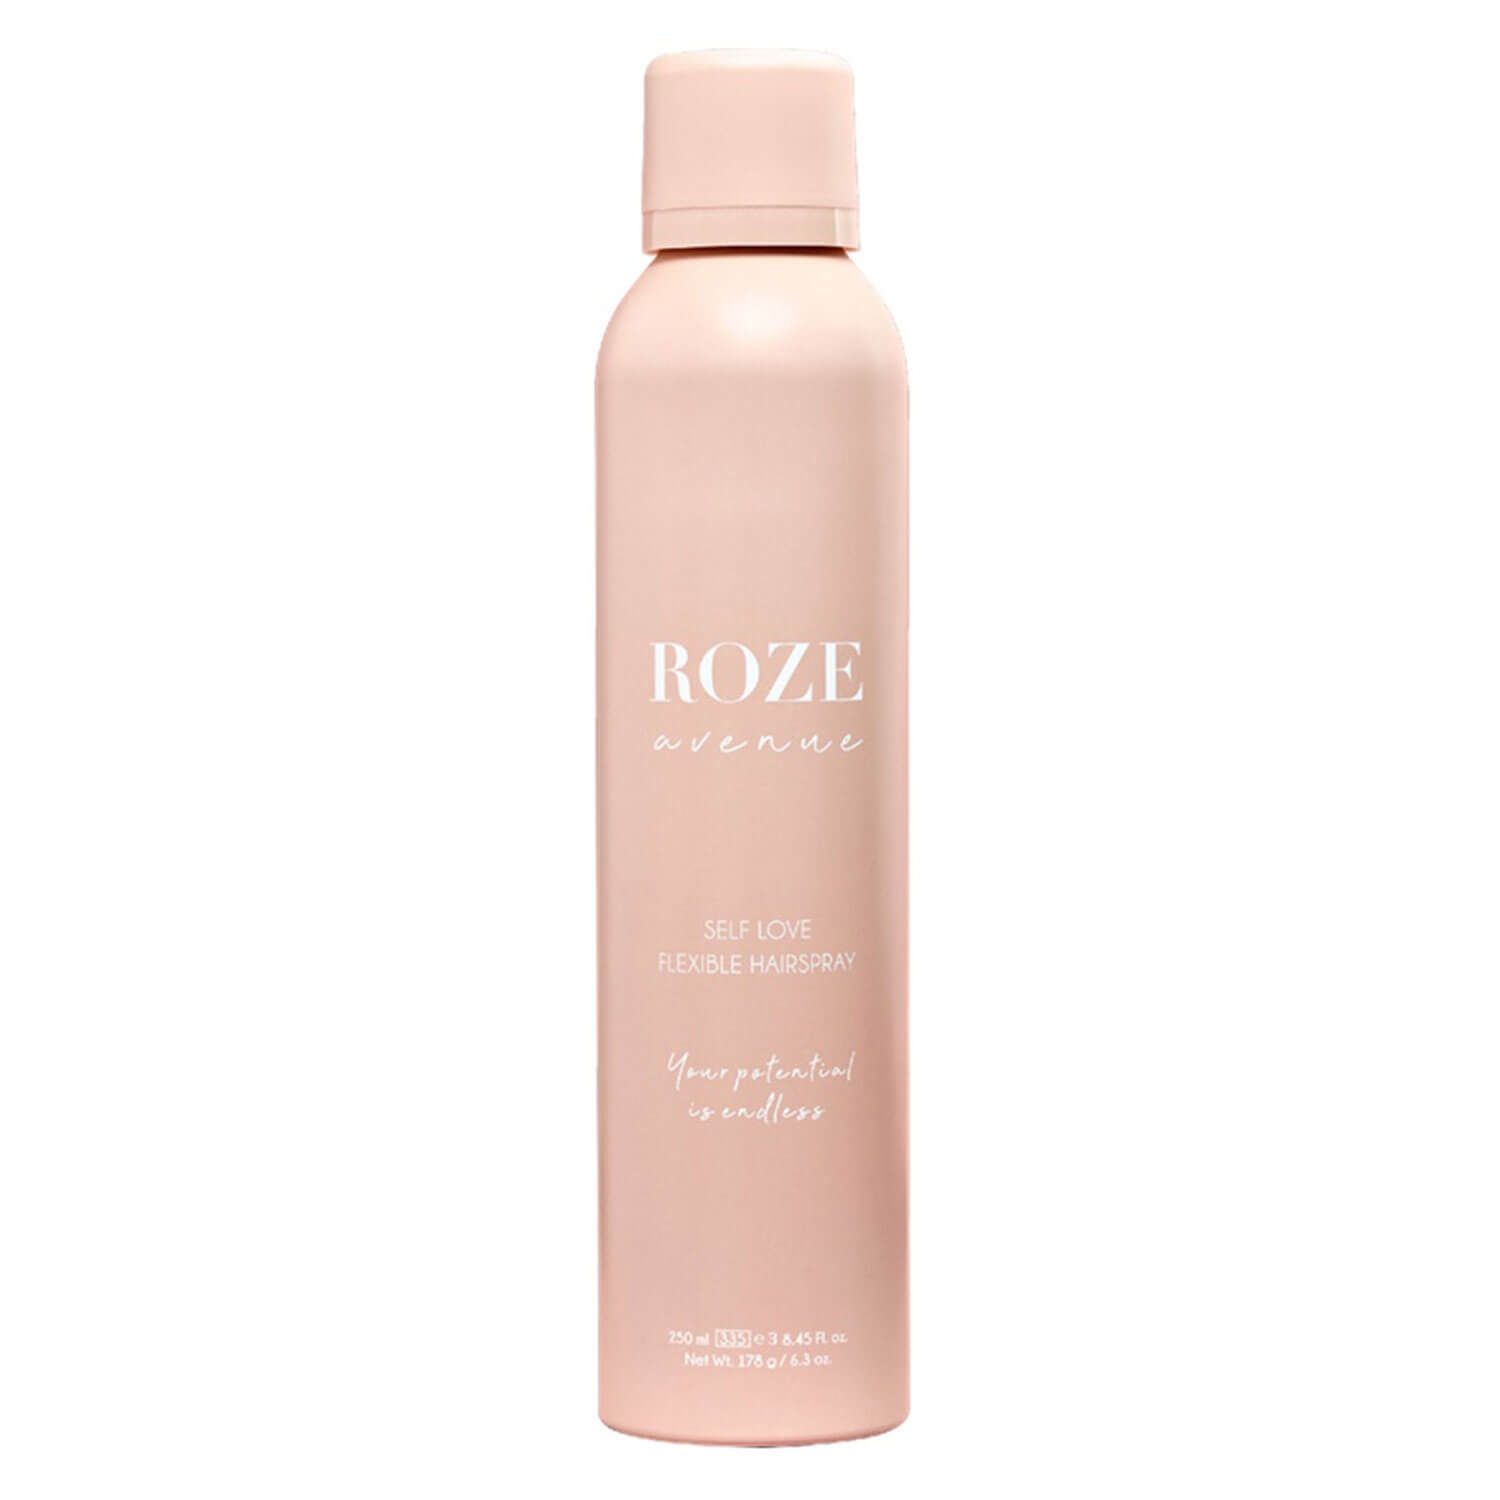 Produktbild von ROZE avenue - Self Love Flexible Hairspray